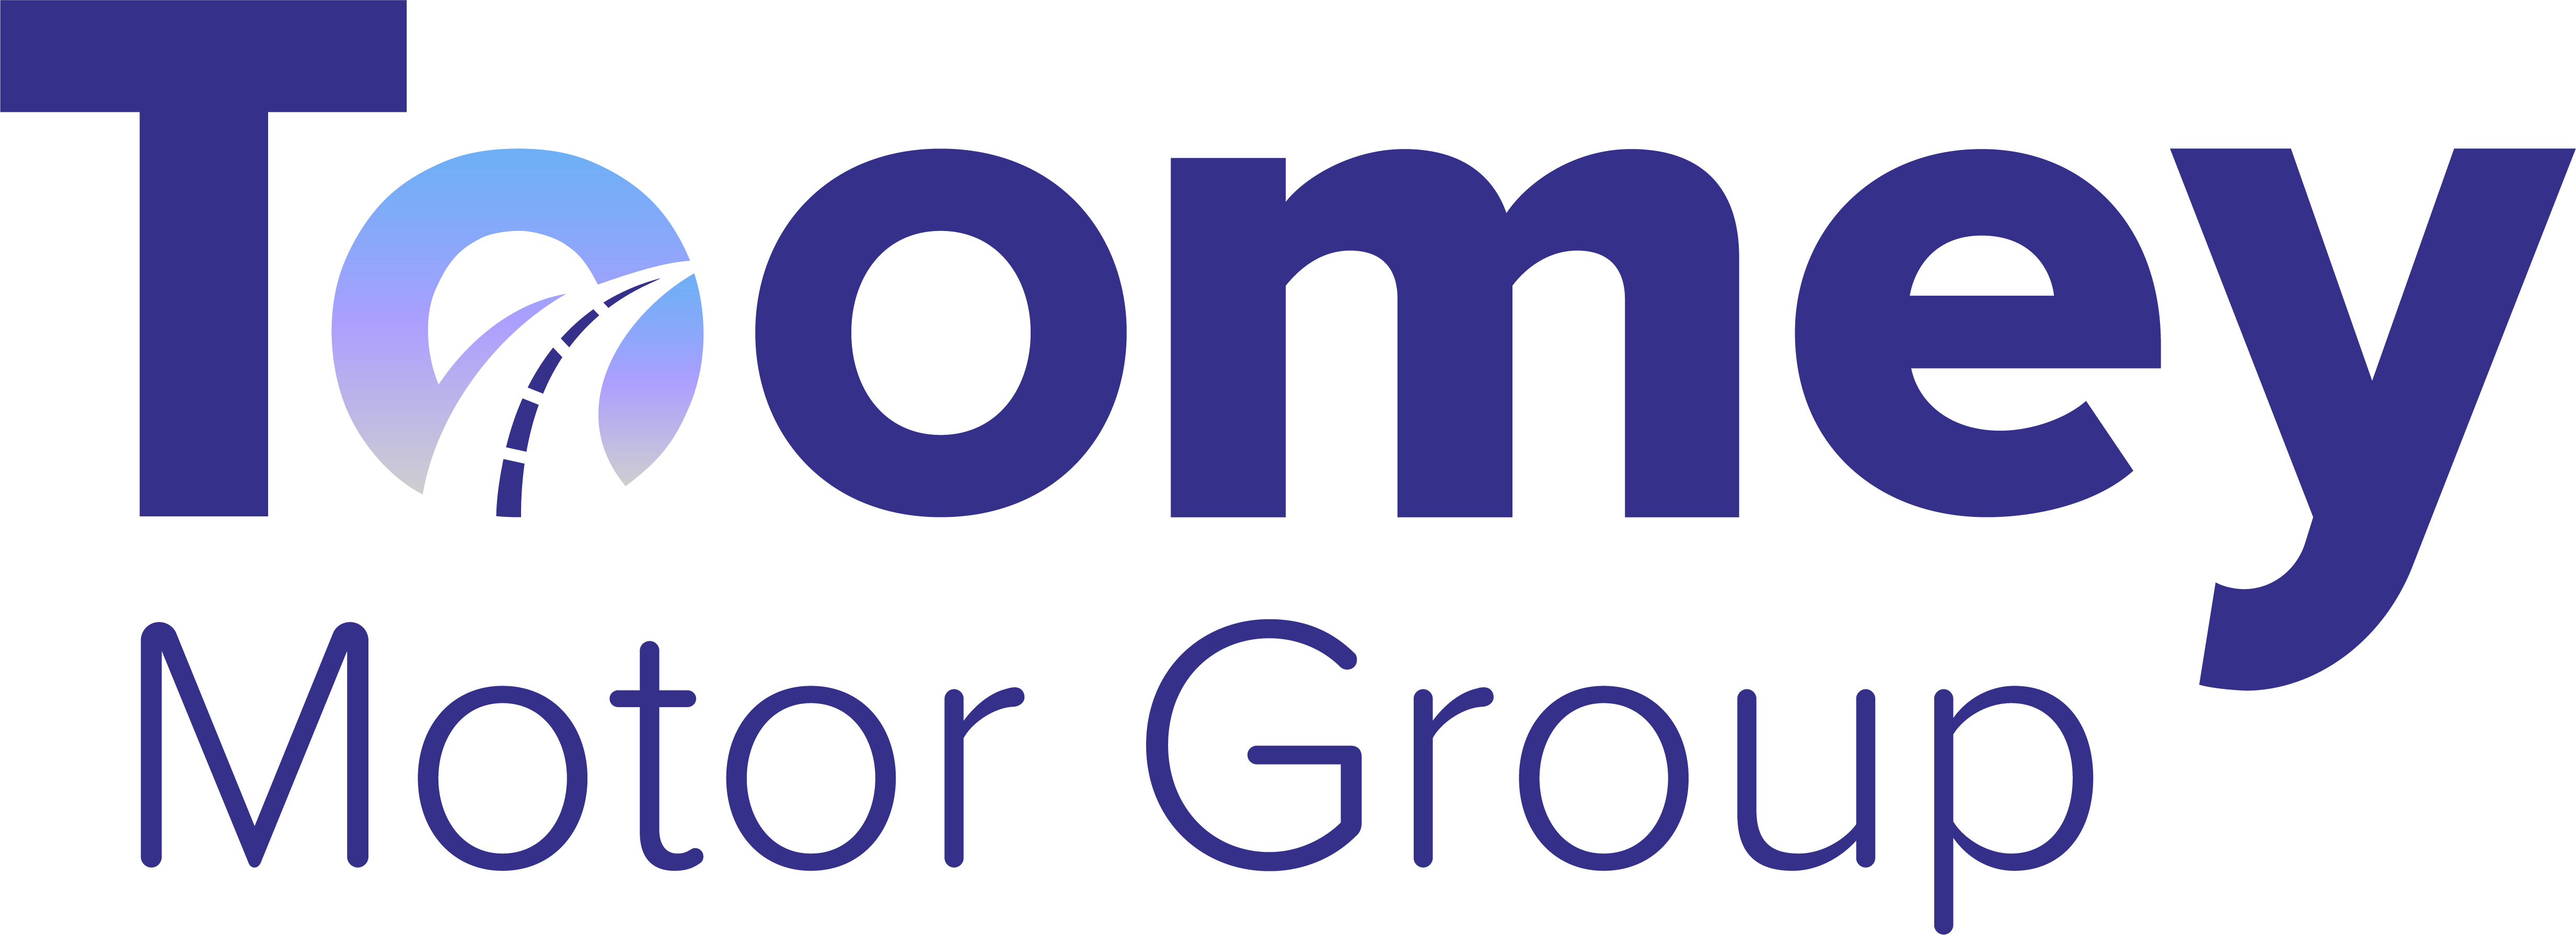 Toomey Motor Group Logo